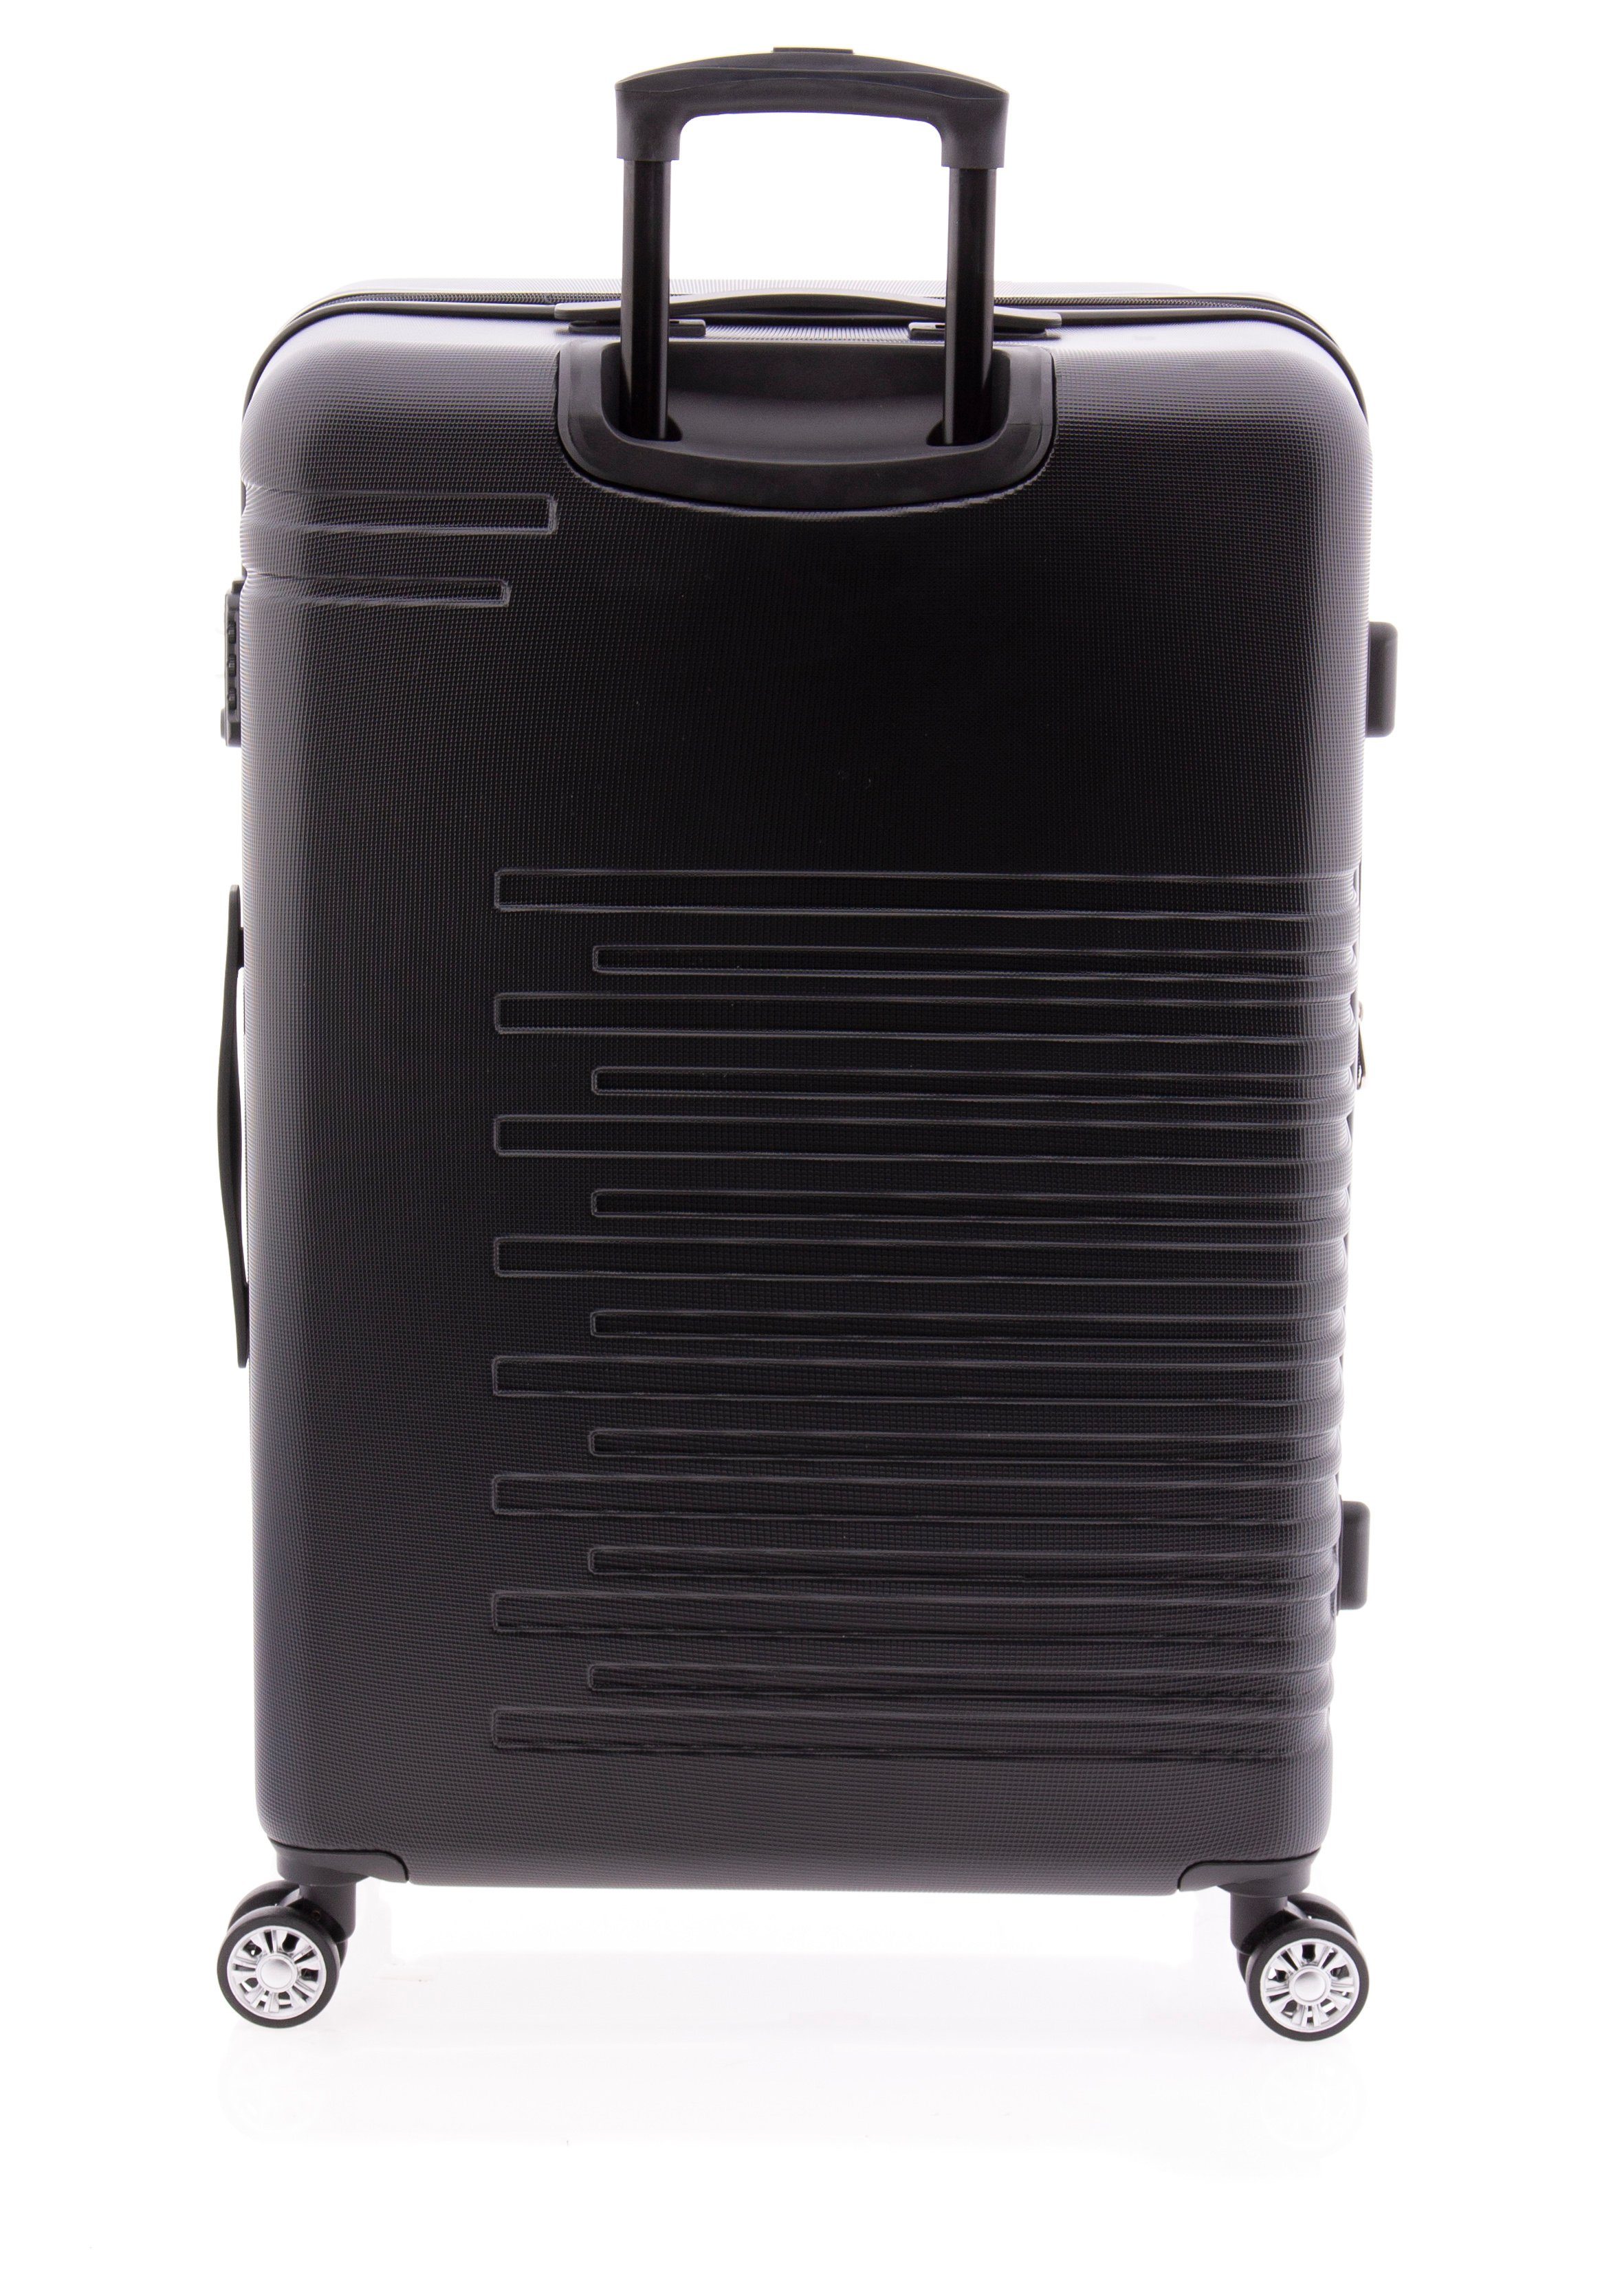 GLADIATOR Weichgepäck-Trolley Koffer 67 cm, Dehnfalte, div. schwarz Farben 4 Rollen, TSA